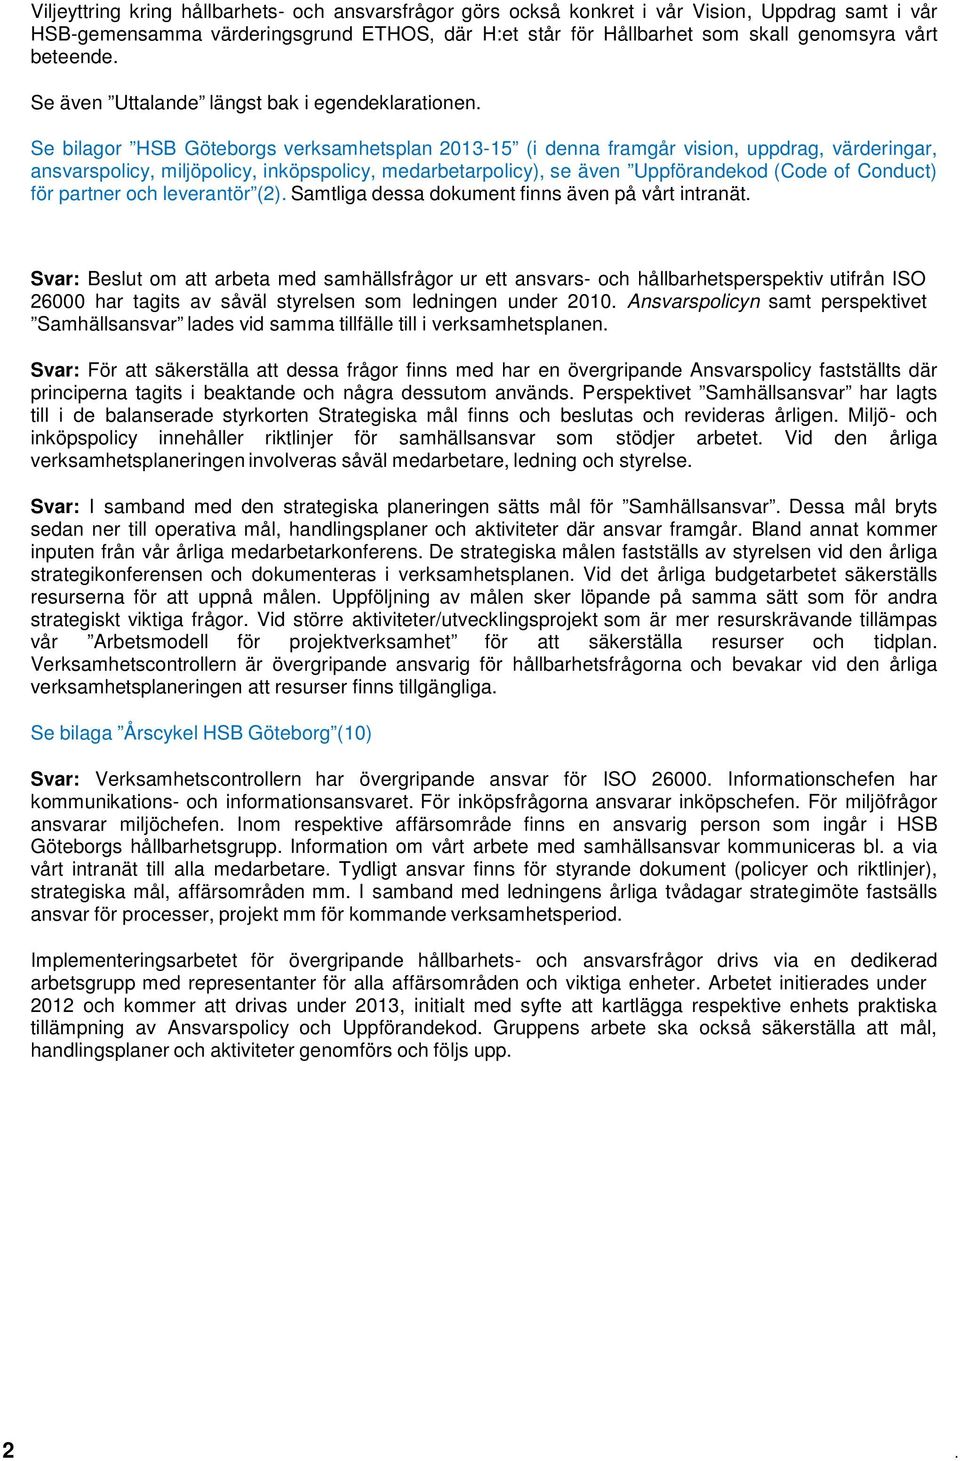 Se bilagor HSB Göteborgs verksamhetsplan 2013-15 (i denna framgår vision, uppdrag, värderingar, ansvarspolicy, miljöpolicy, inköpspolicy, medarbetarpolicy), se även Uppförandekod (Code of Conduct)